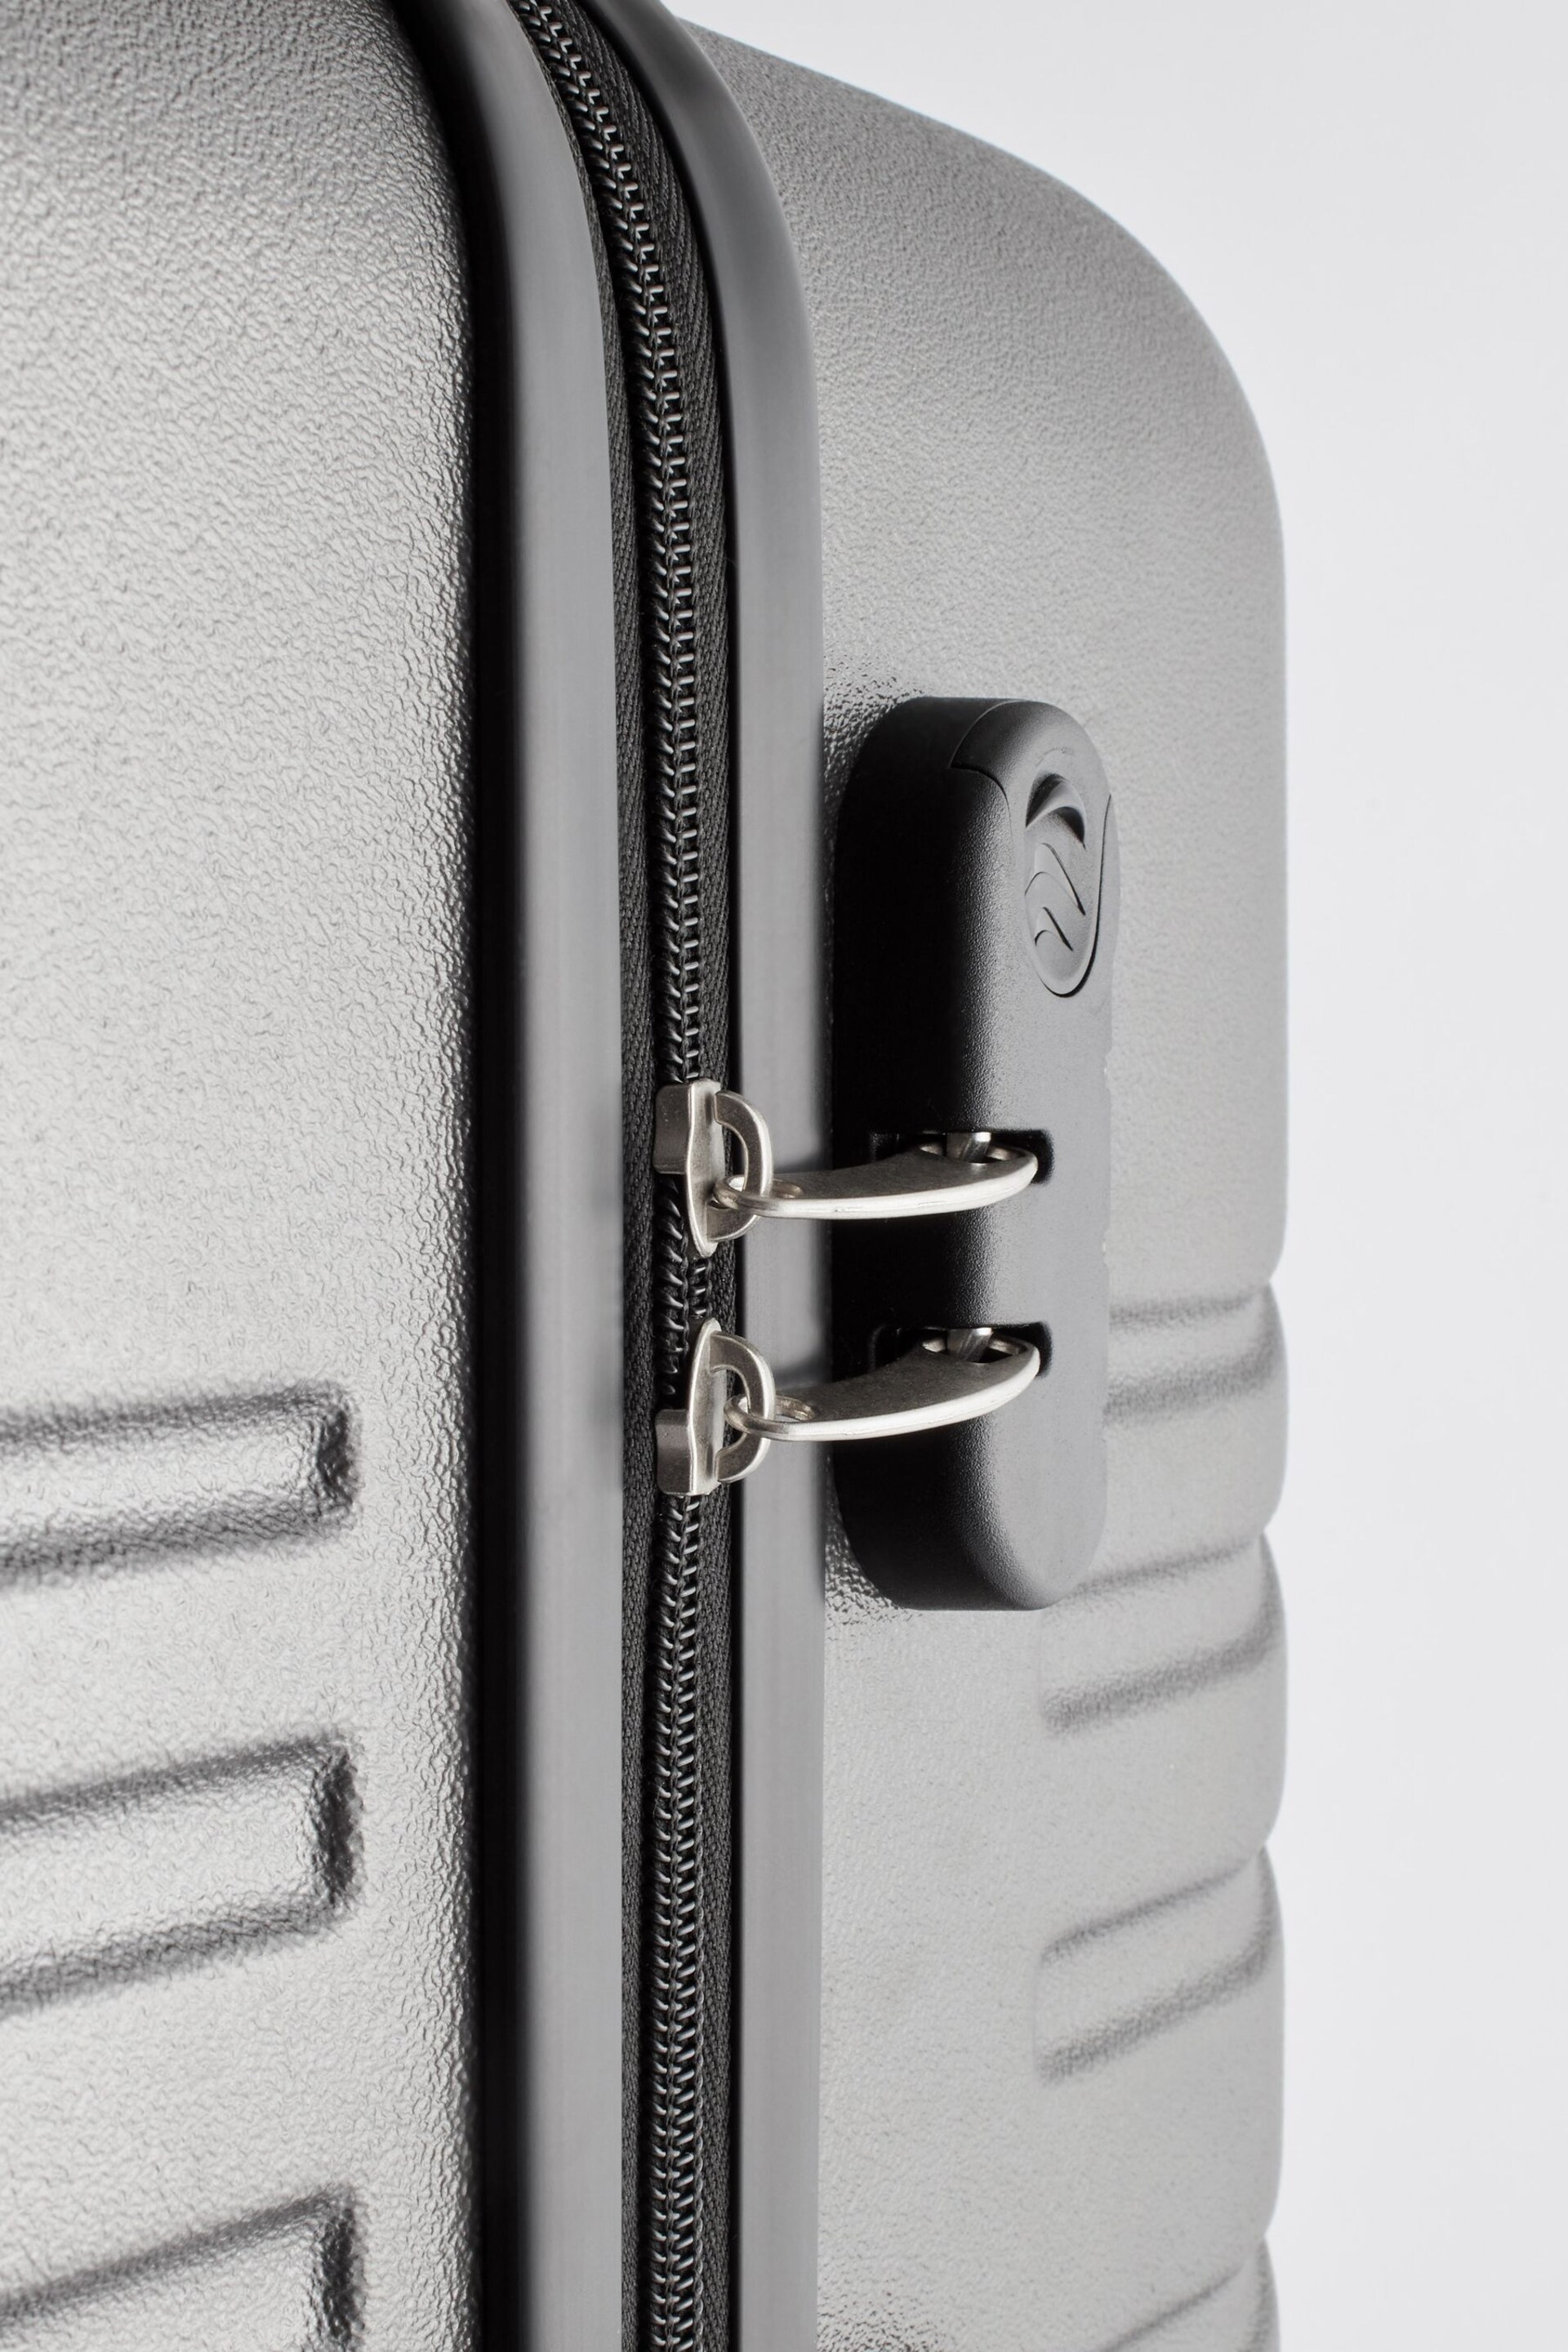 Grey Large Next Suitcase - Image 5 of 23